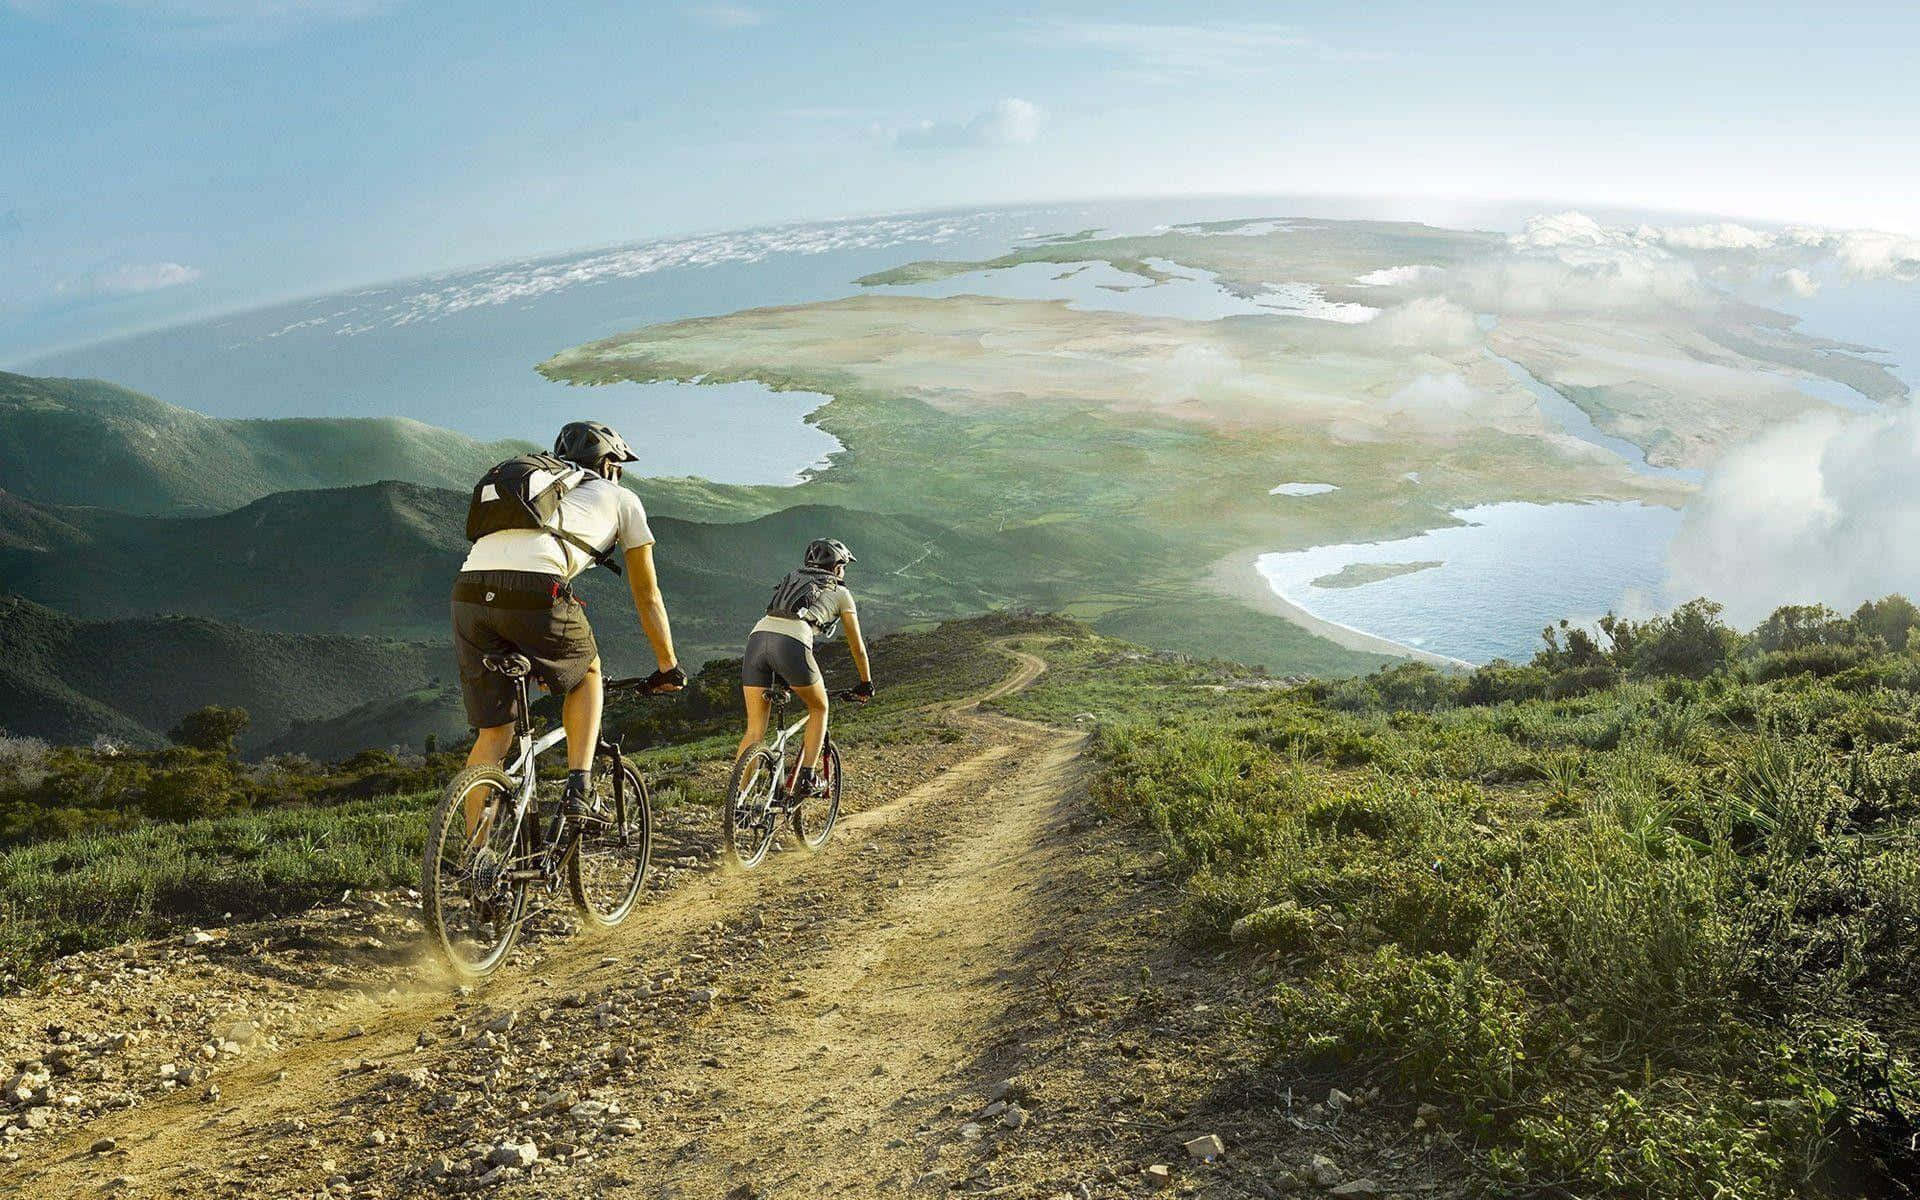 Dospersonas Montando Bicicletas En Un Camino De Tierra Fondo de pantalla